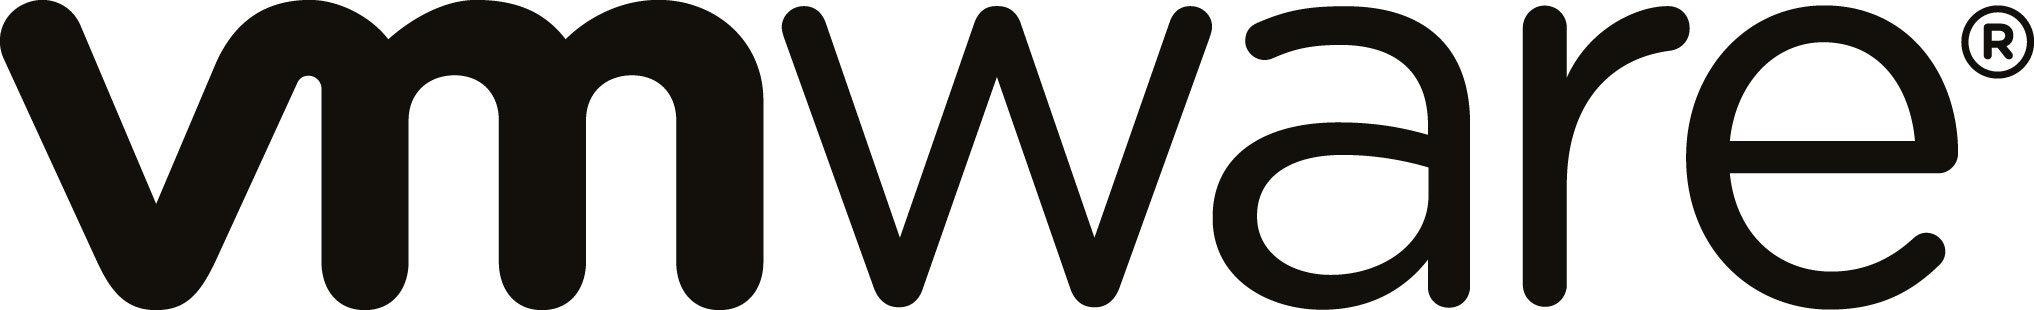 VMware Global Inc. - Zweigniederlassung München_logo